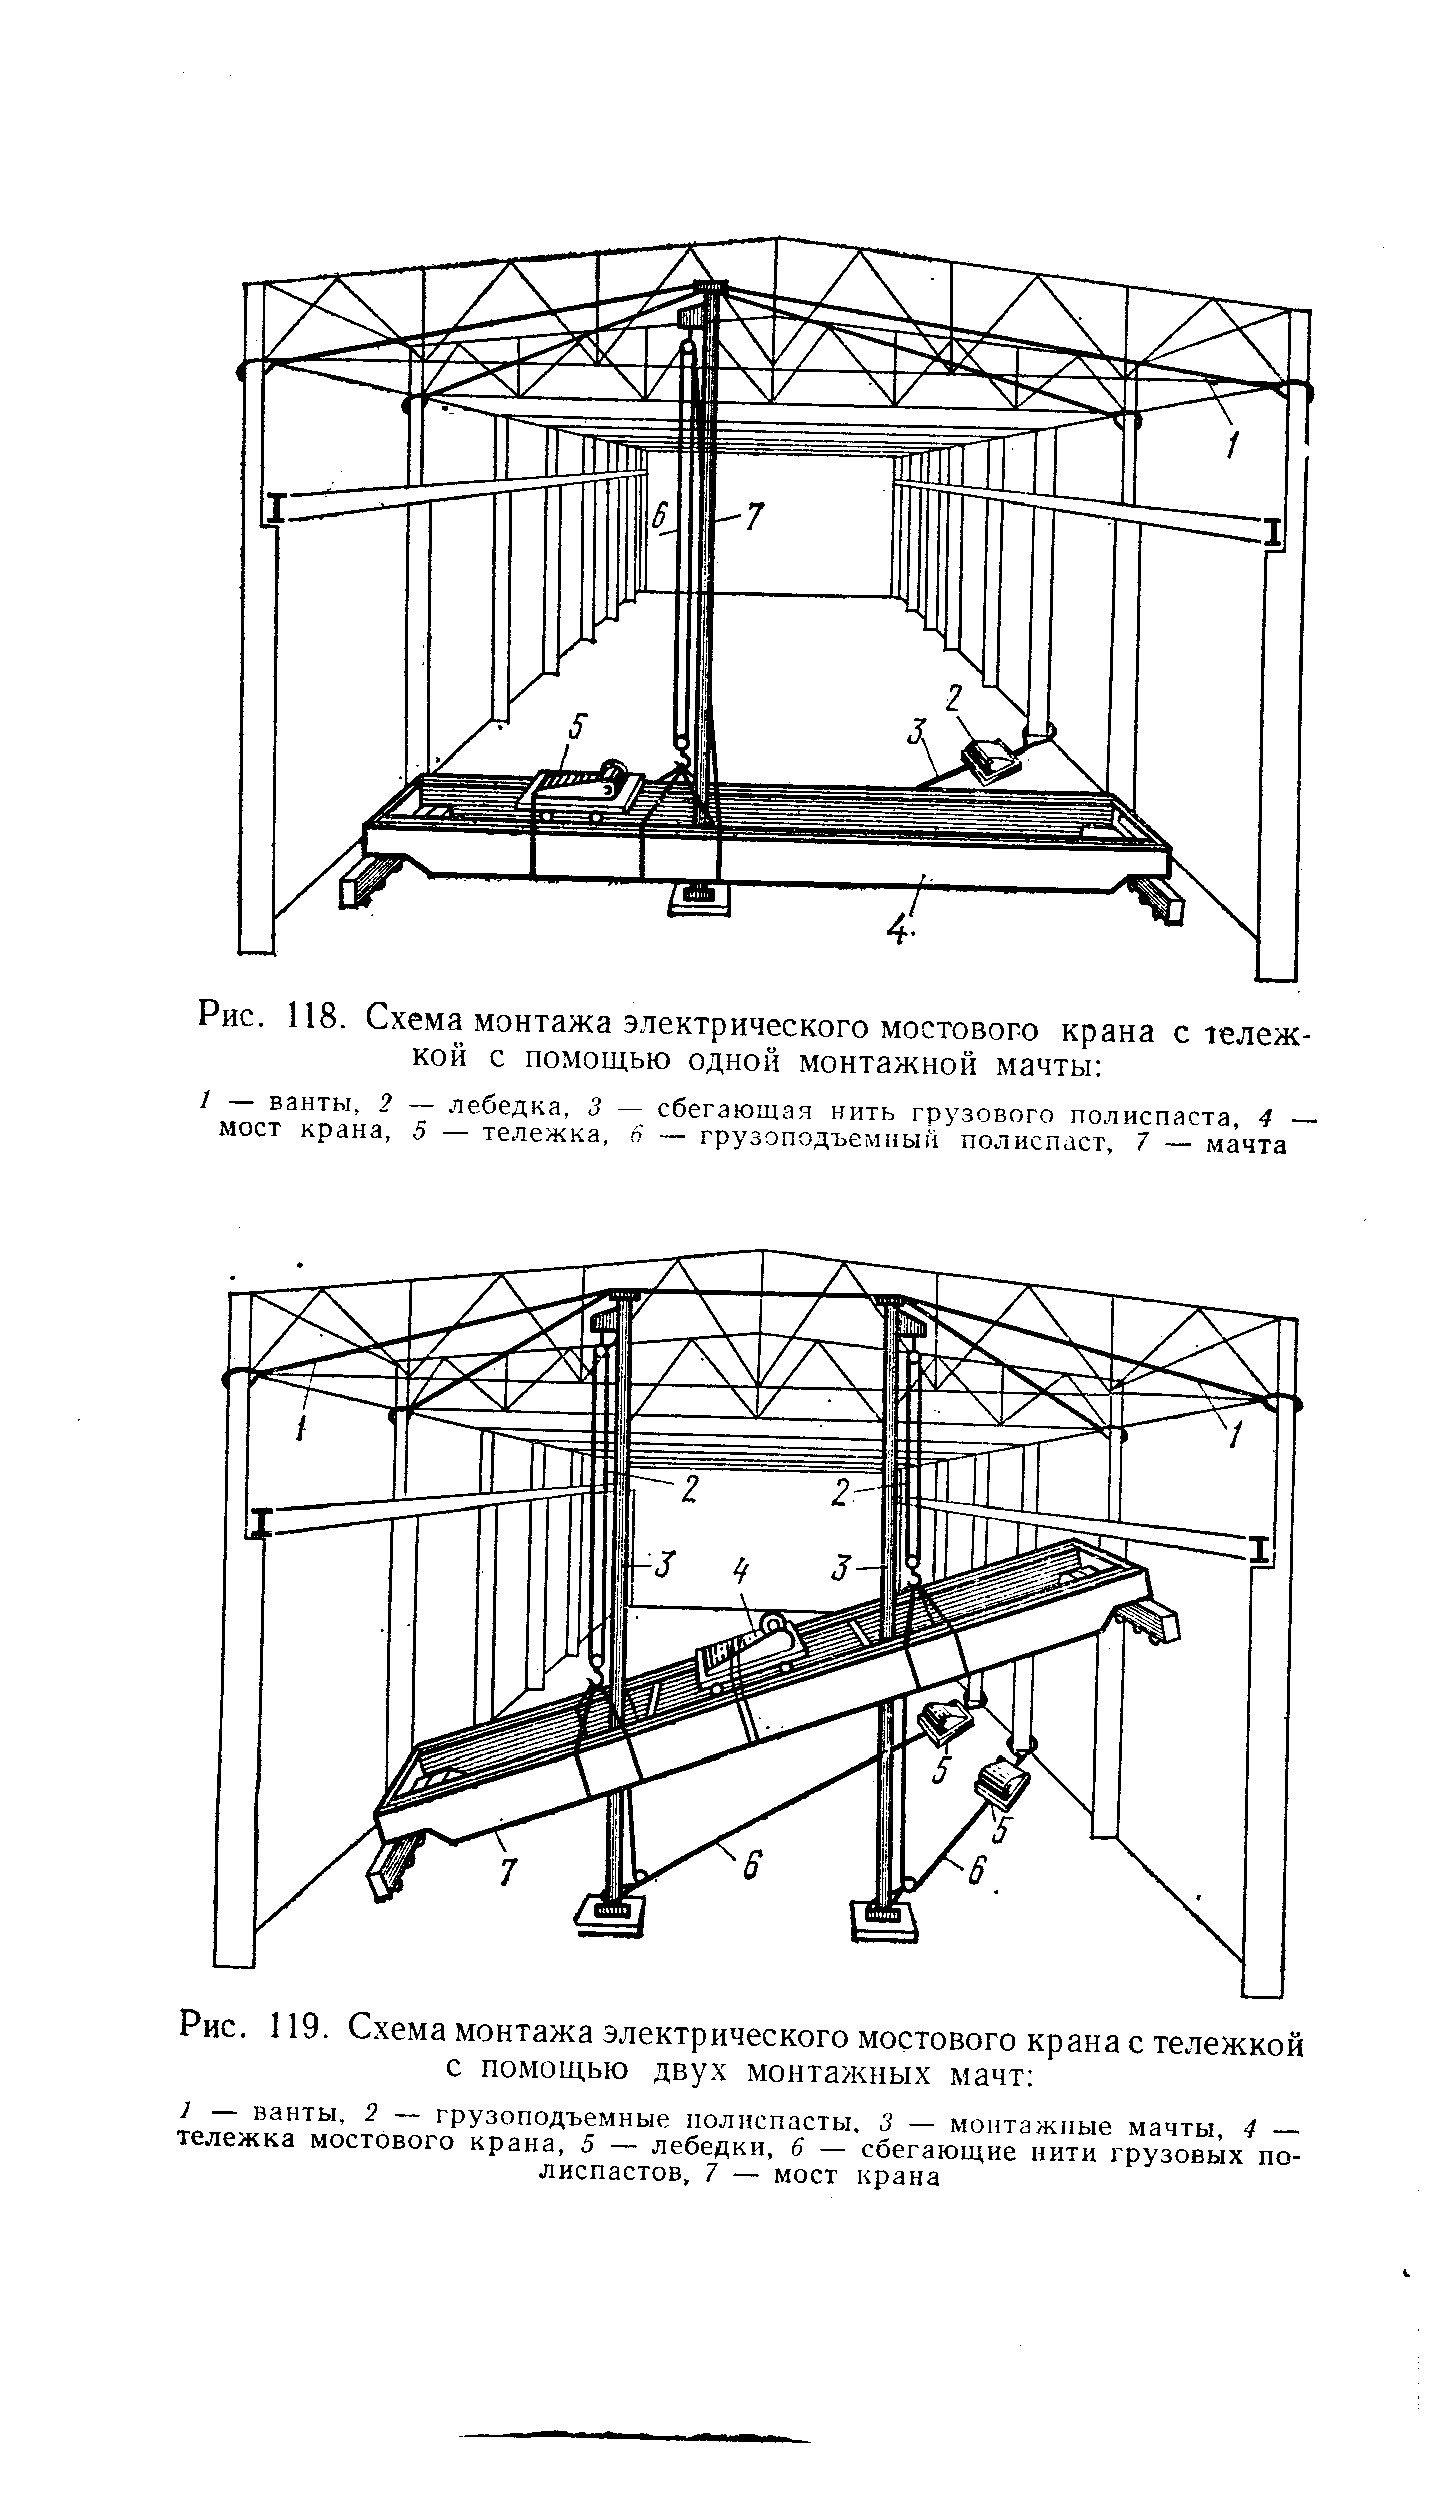 Технологическая схема мостового крана